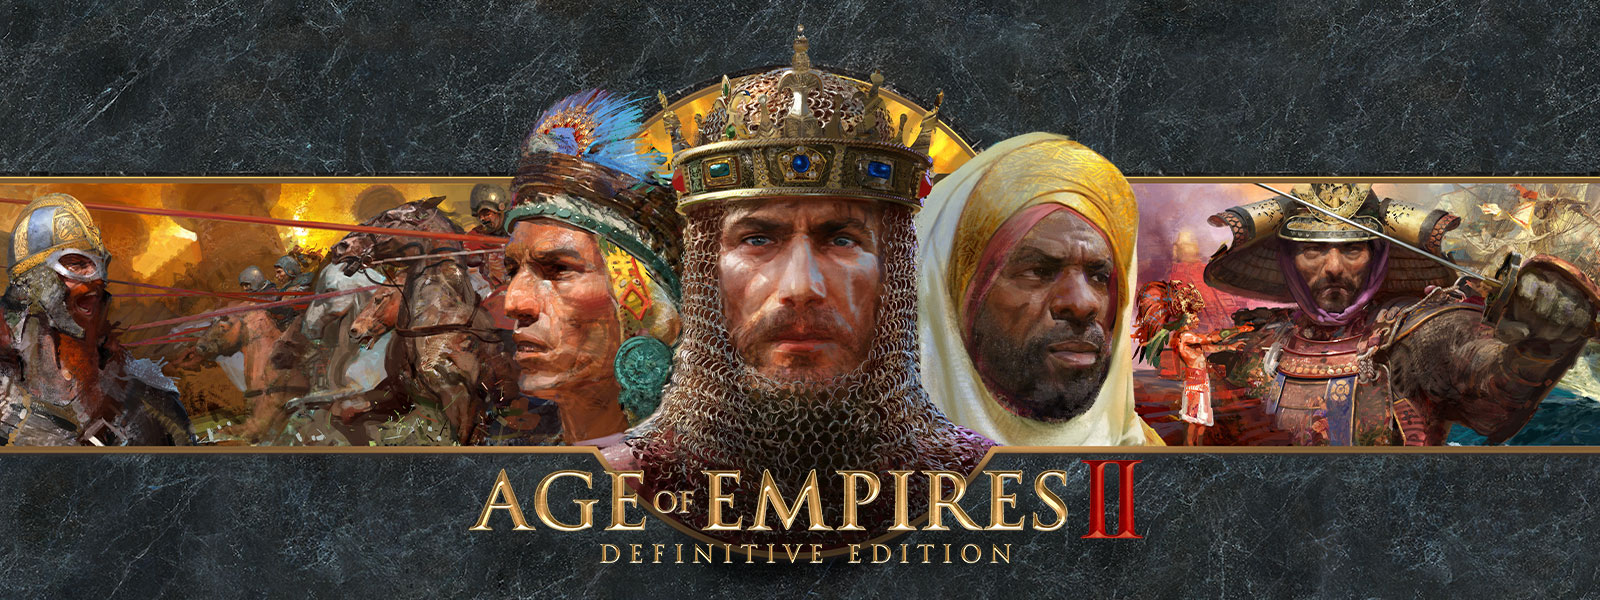 Age of Empires II: Definitive Edition-logotypen mot en grå skifferbakgrund med härförare och deras arméer